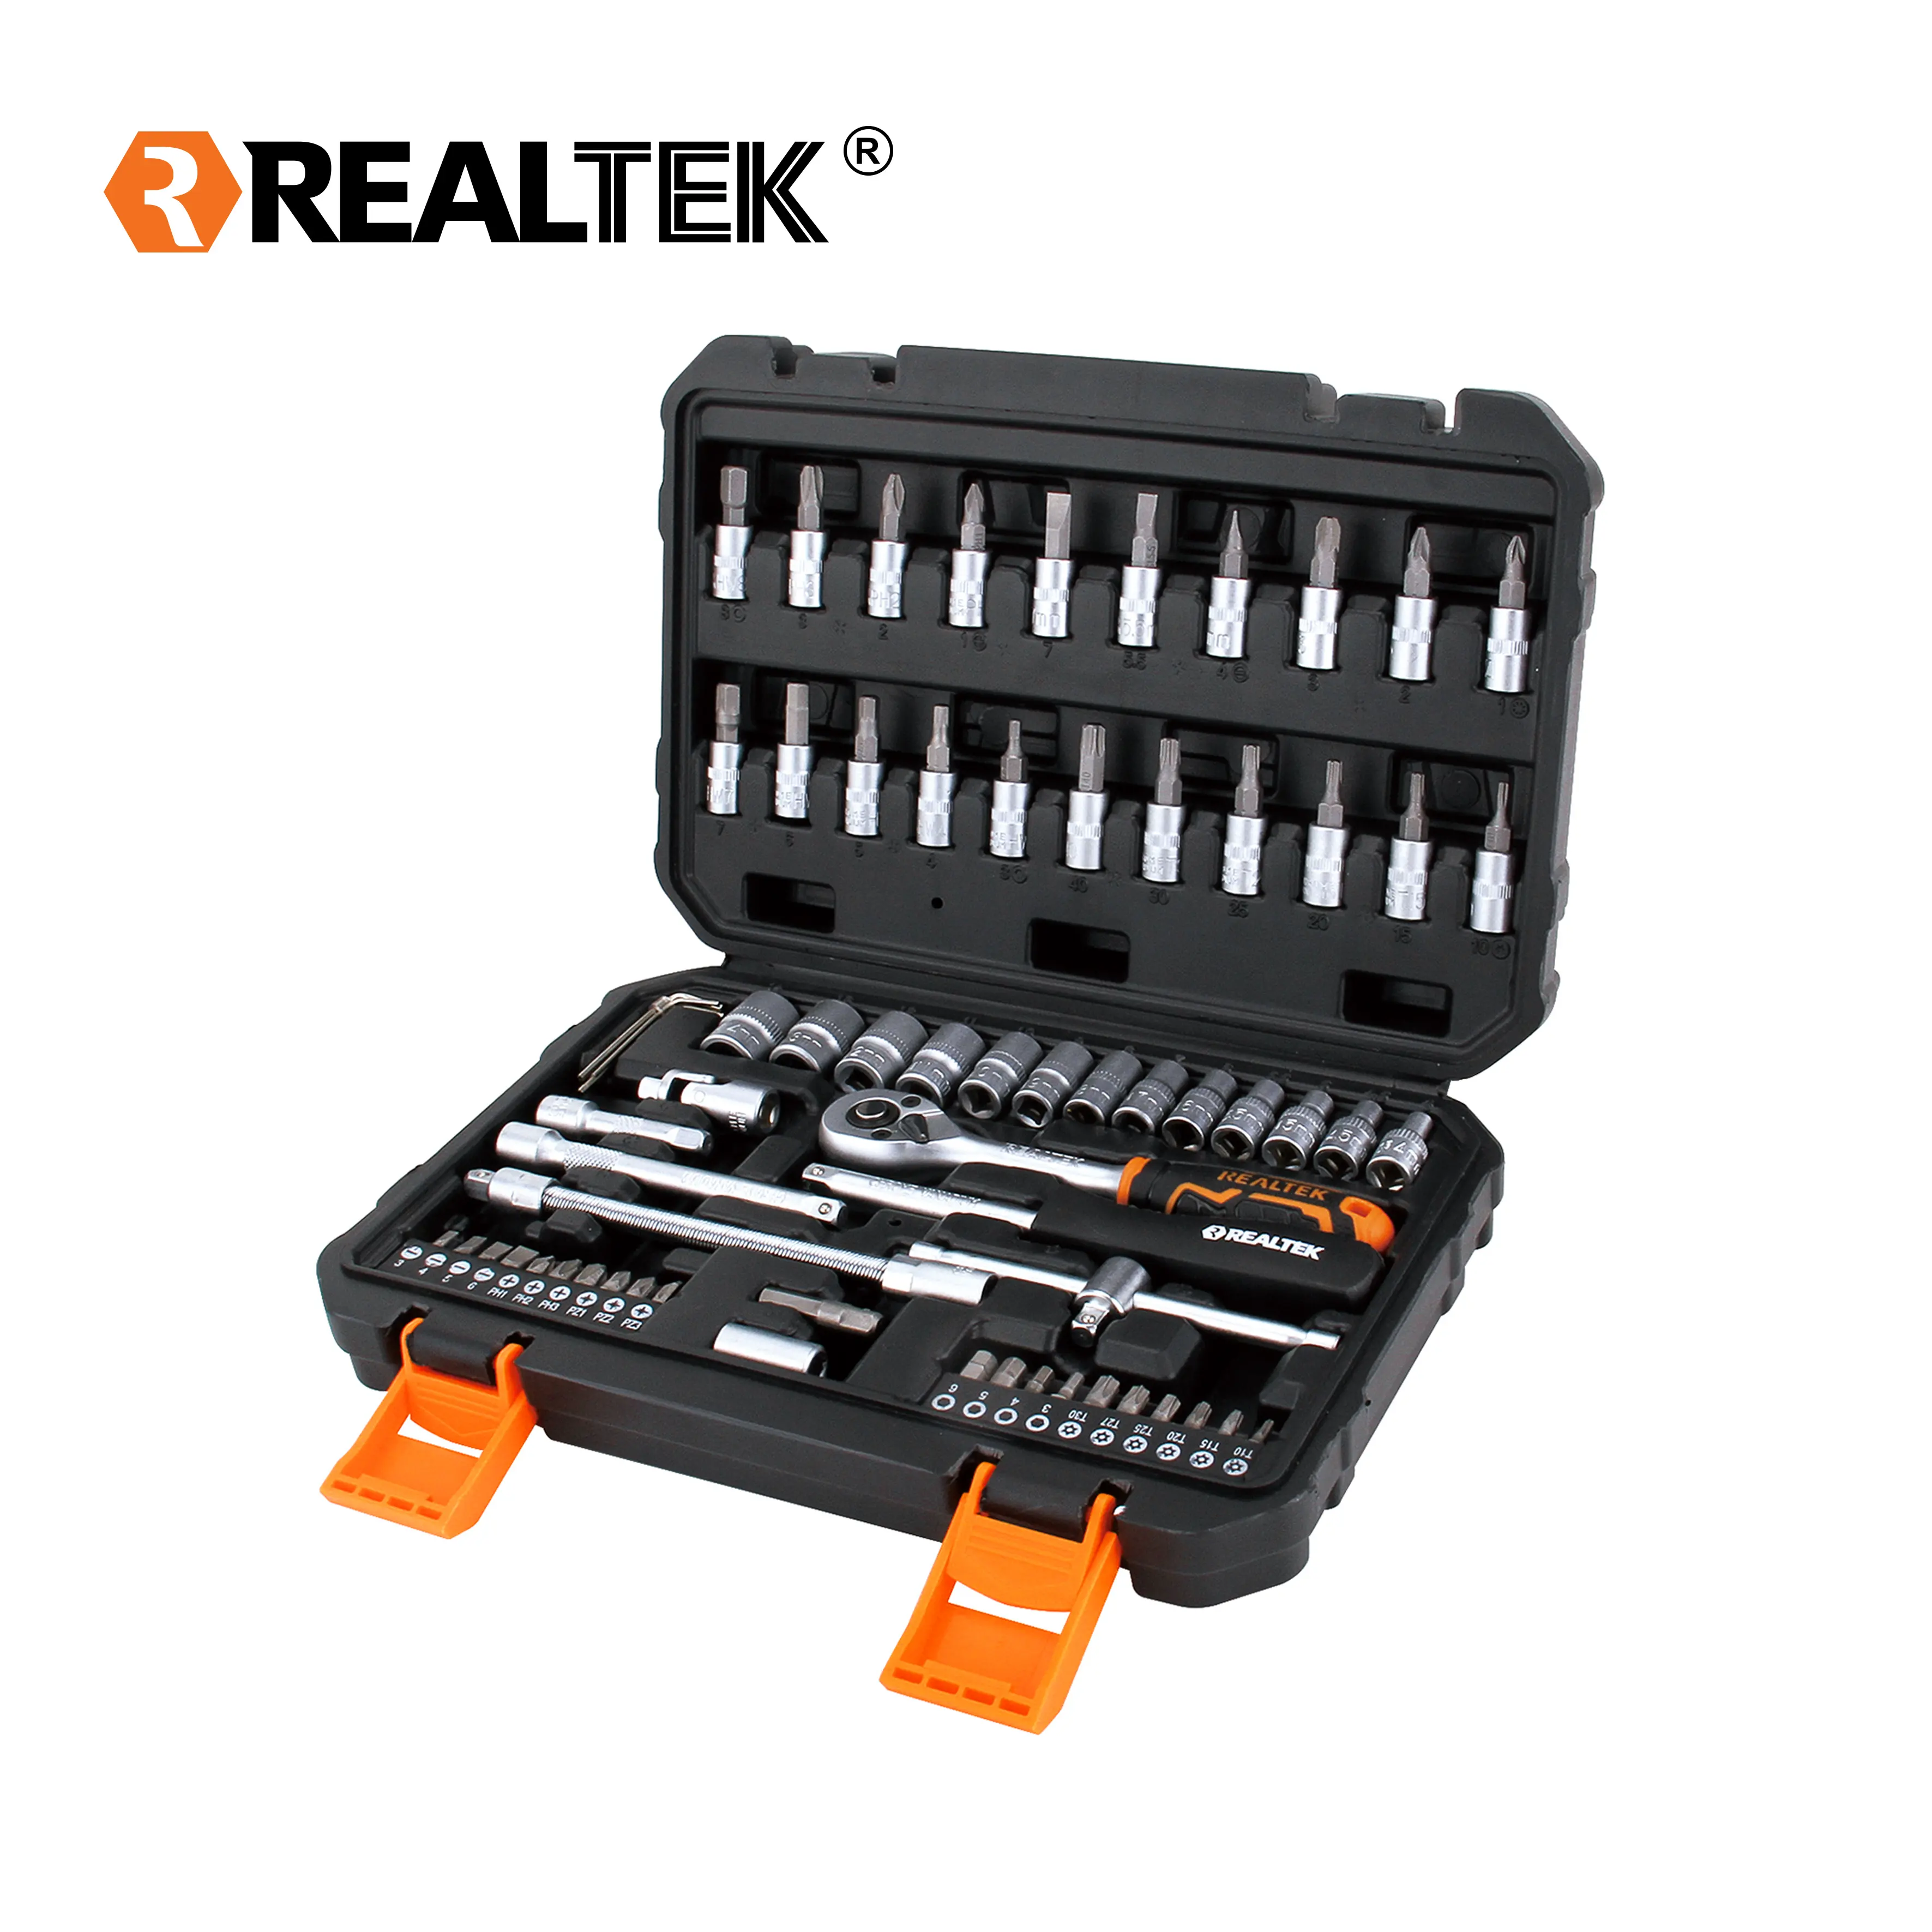 Realtek 66 طقم أدوات احترافية CRV أدوات يدوية ميكانيكية لإصلاح السيارات